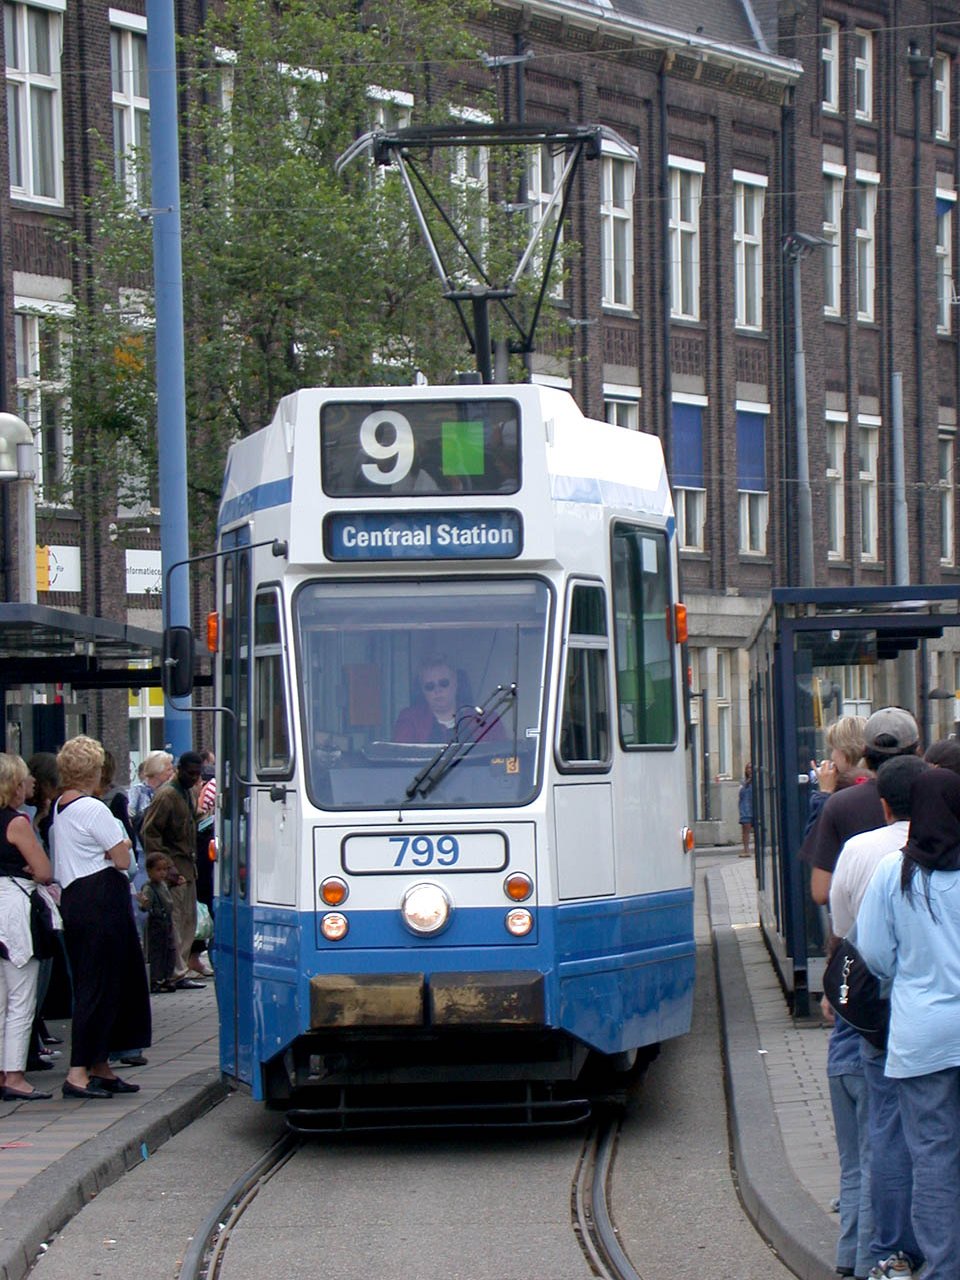 9G 799 Ein Bild aus dem Jahre 2003, dieser Straßenbahntyp ist mittlerweile seit 2015 ausgeschieden. A pic from 2003, this type was withdrawn from service in 2015.